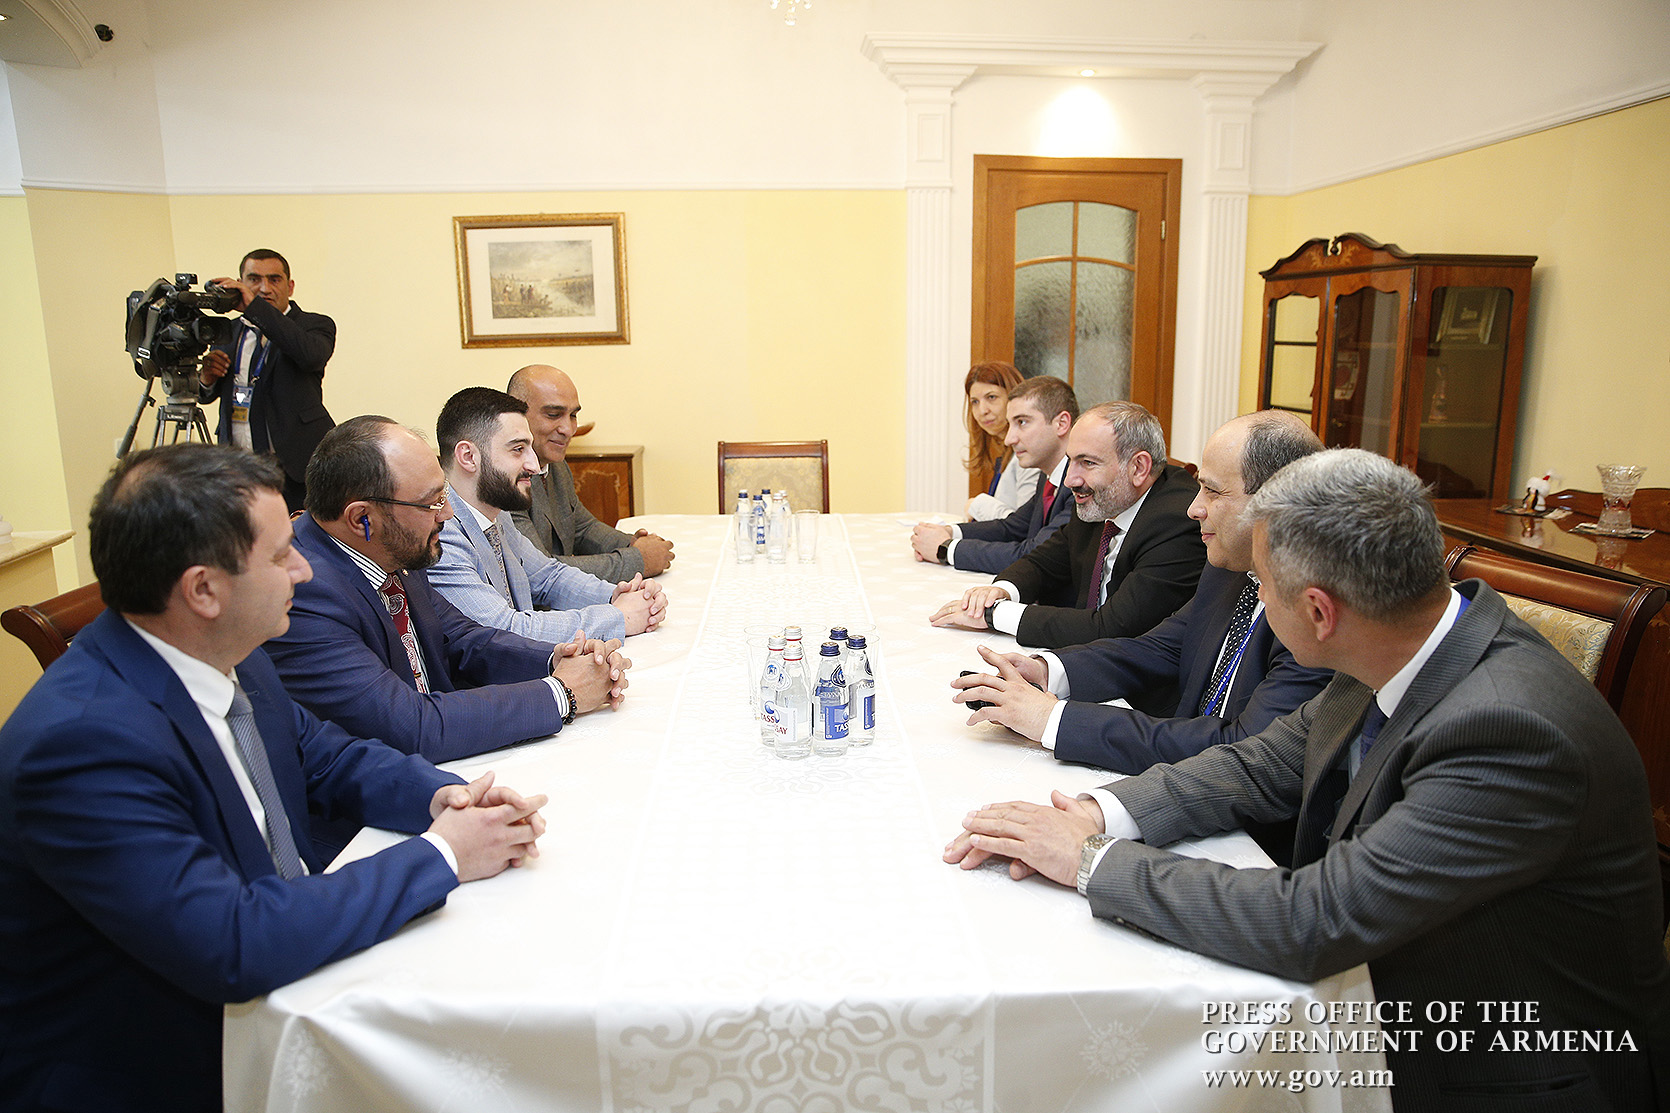 Никол Пашинян принял участие в официальном ужине лидеров государств-членов ЕАЭС и встретился с армянскими предпринимателями